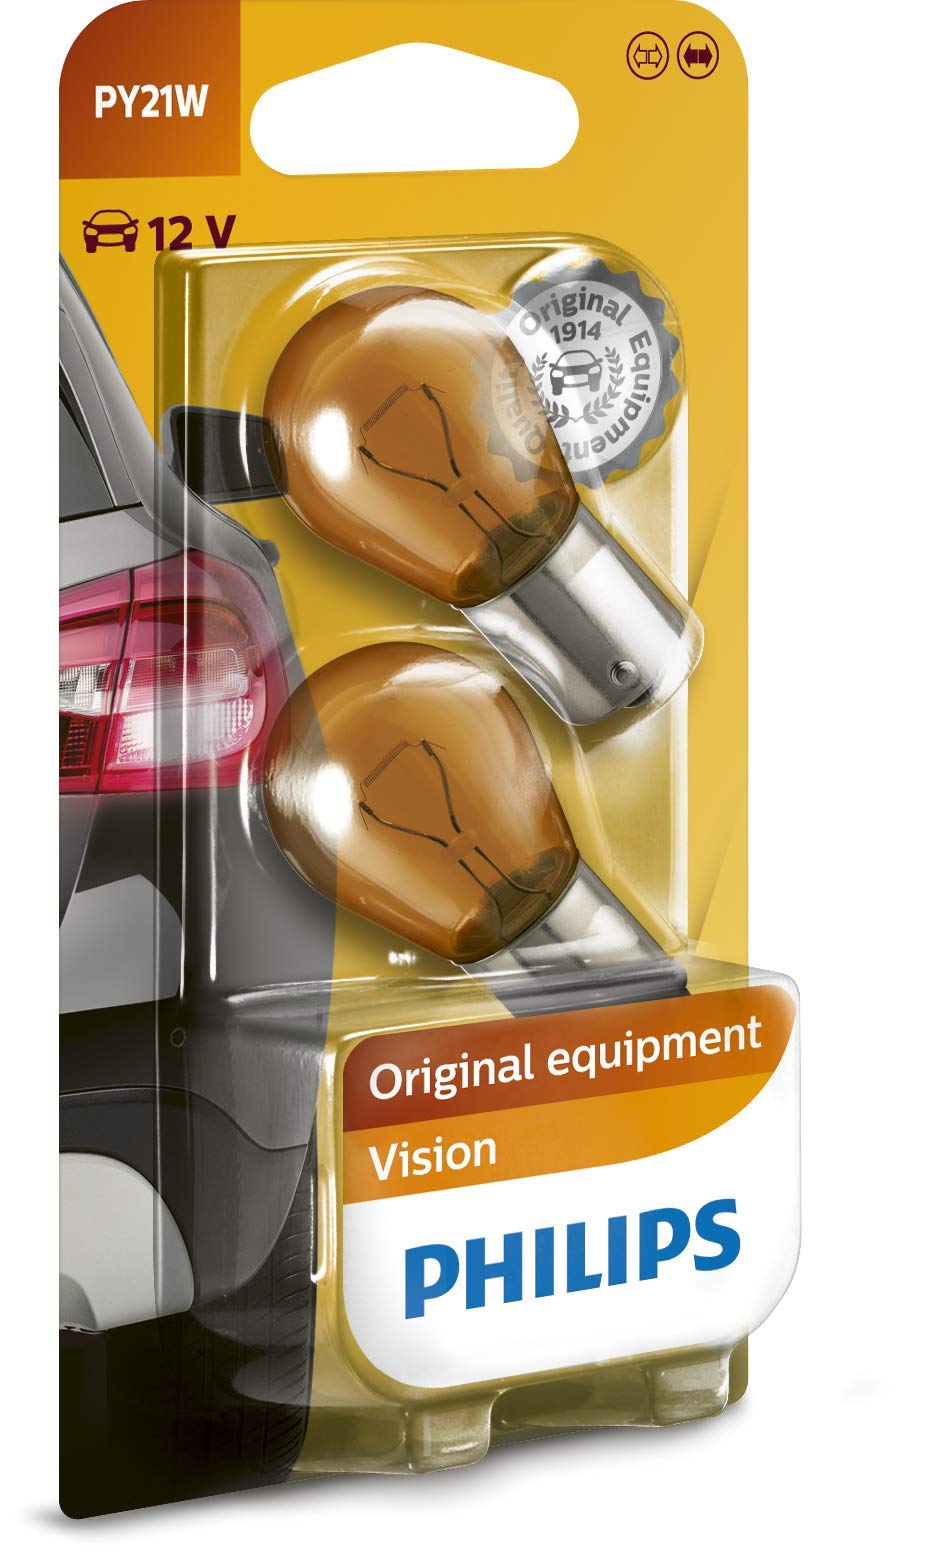 Philips automotive lighting Phillips Vision PY 21W 12V Standard-Signal- und -Innenbeleuchtung, 2-er Packung von Philips automotive lighting